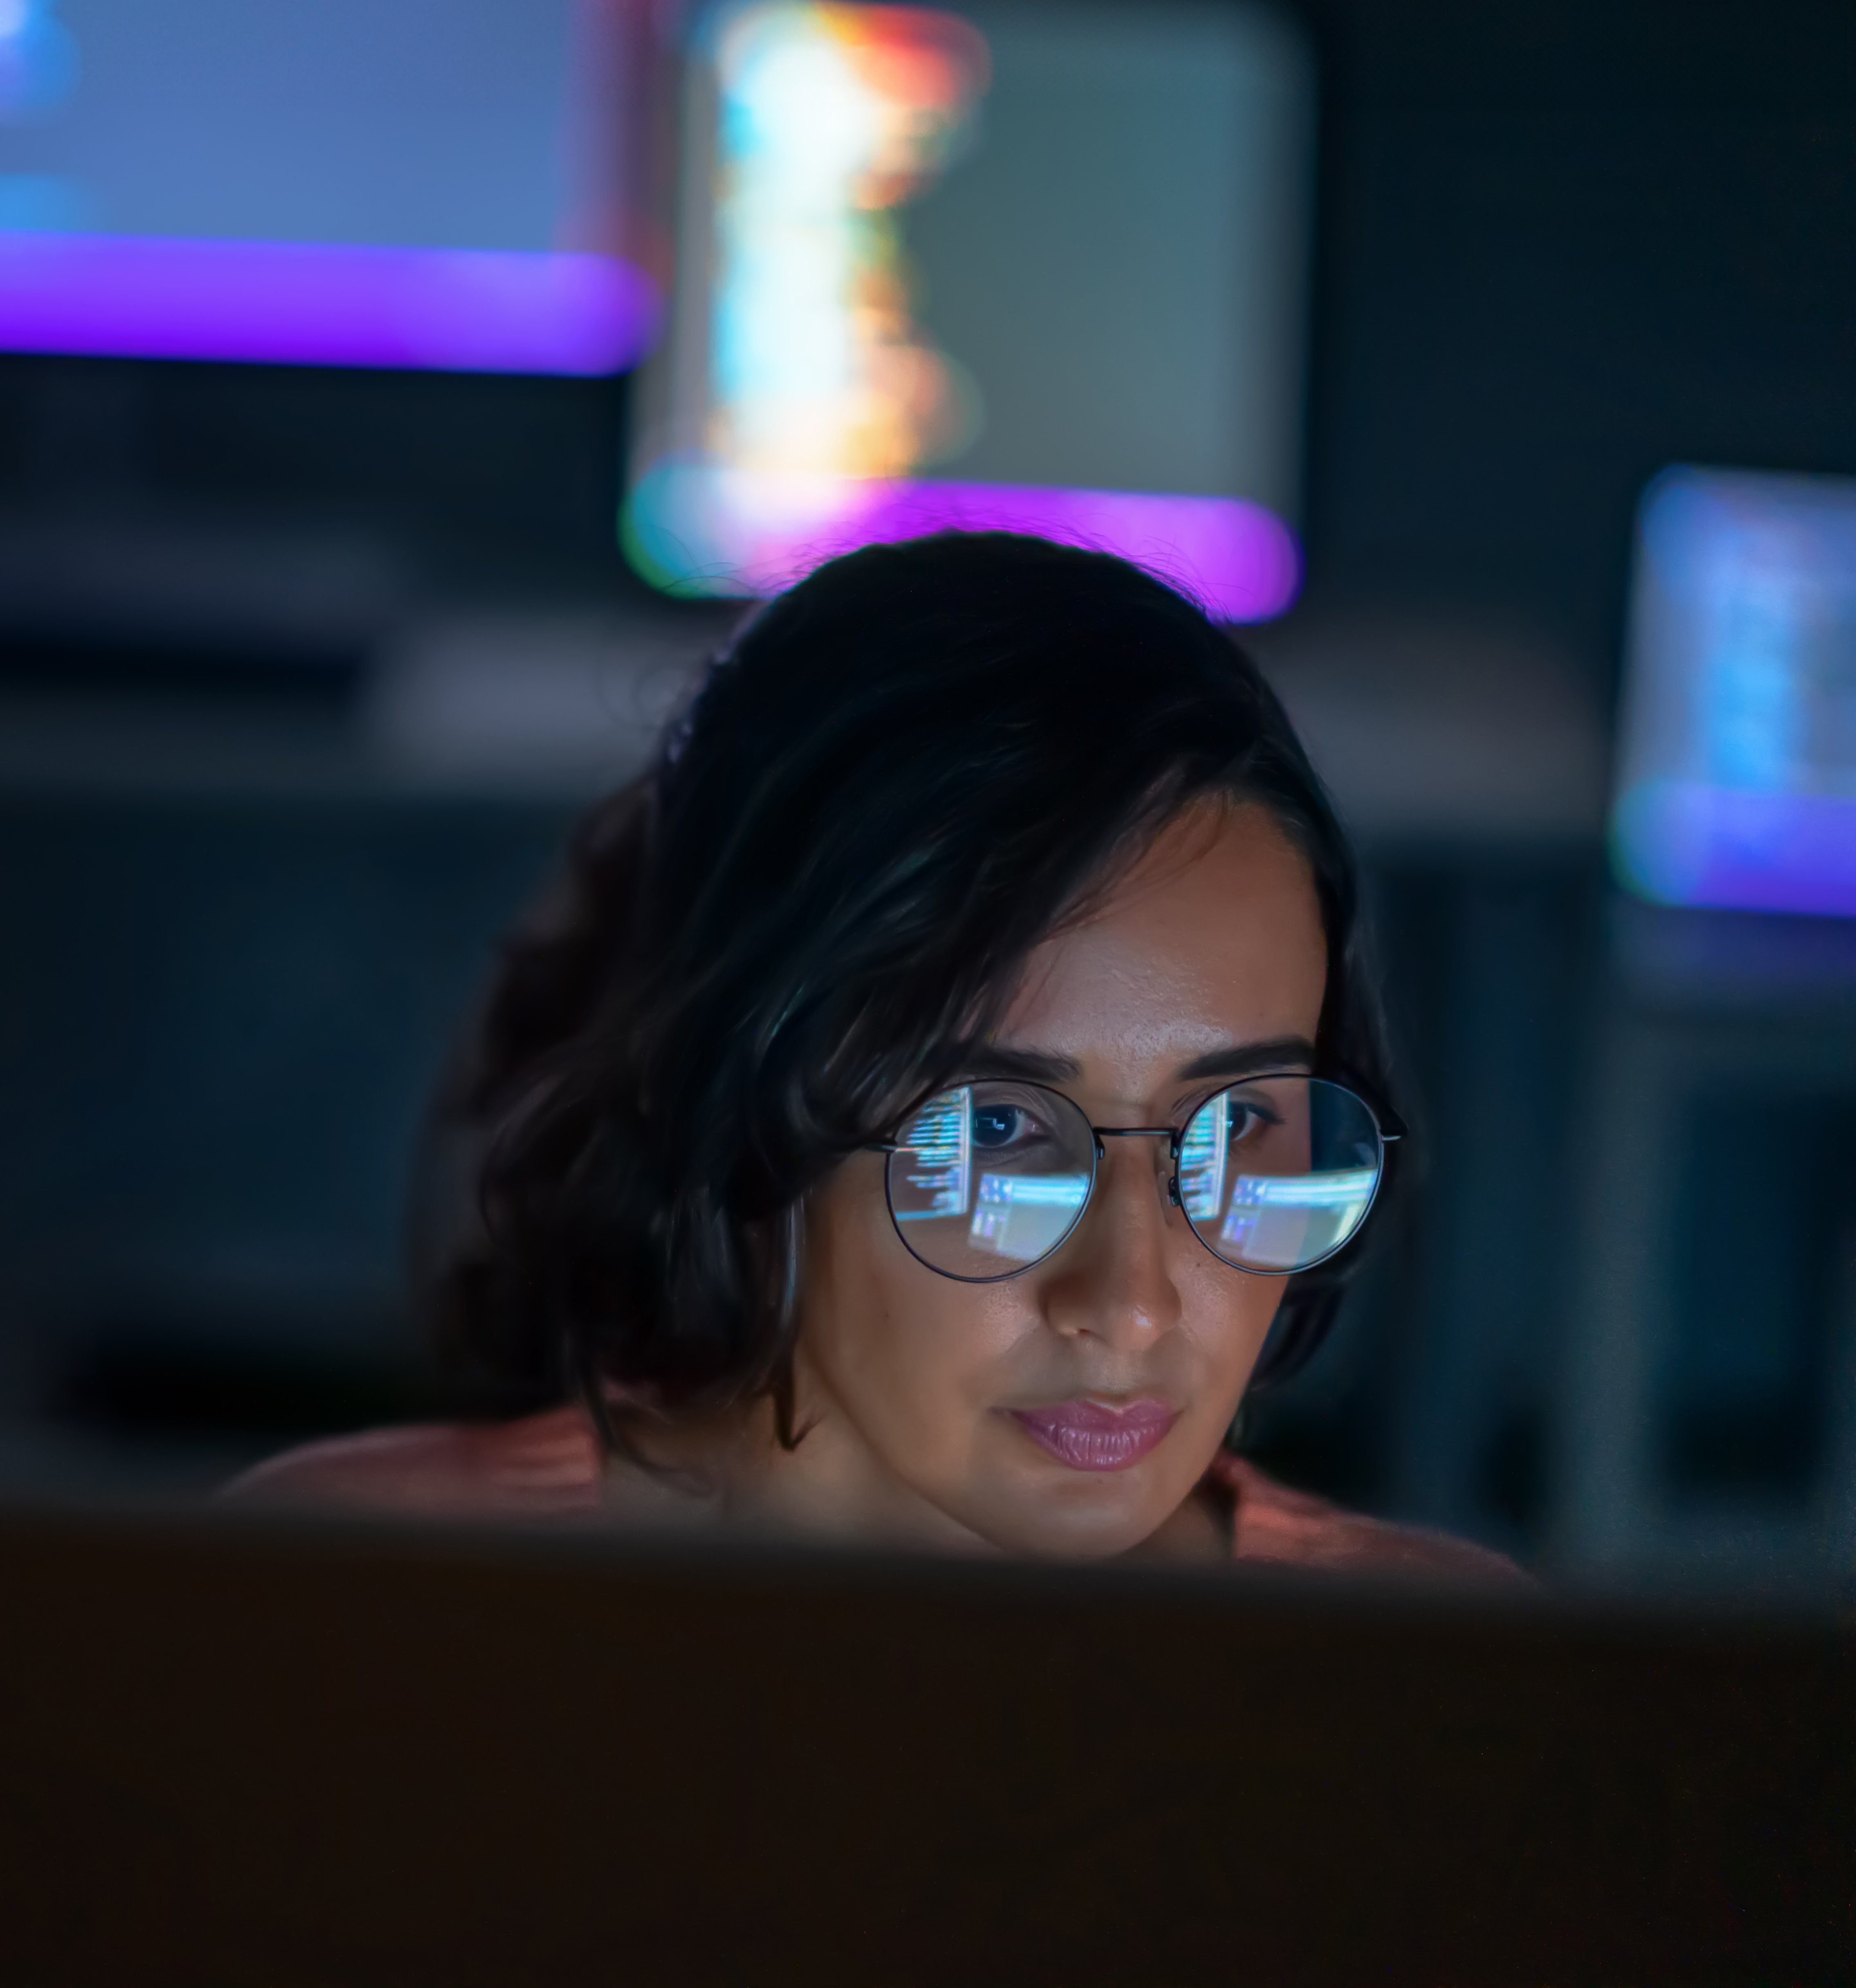 Une femme regarde des écrans d’ordinateur dans une pièce sombre.